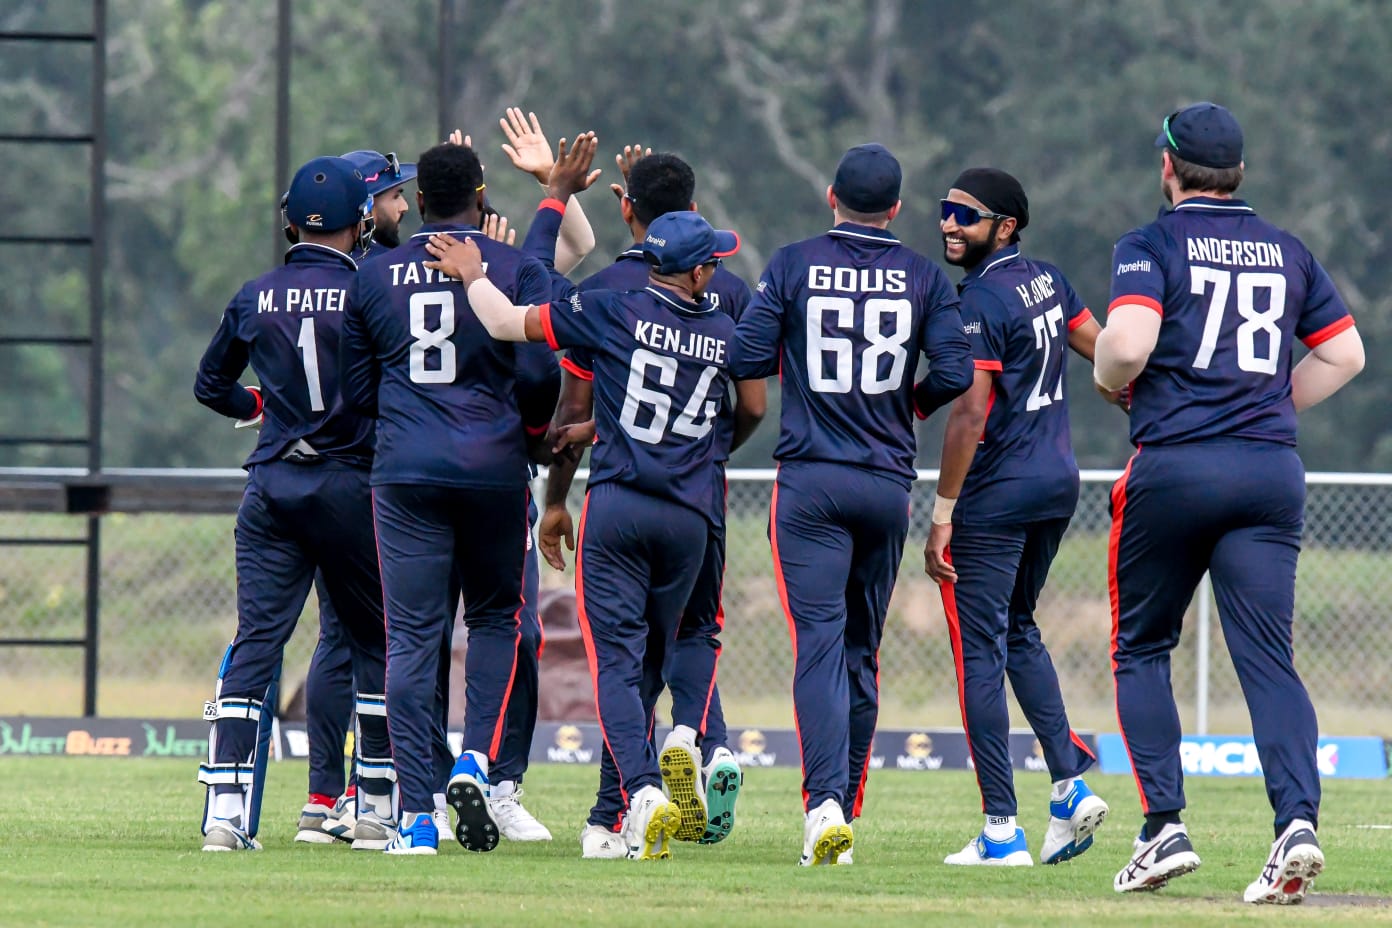 USA stun Bangladesh in historic T20I win